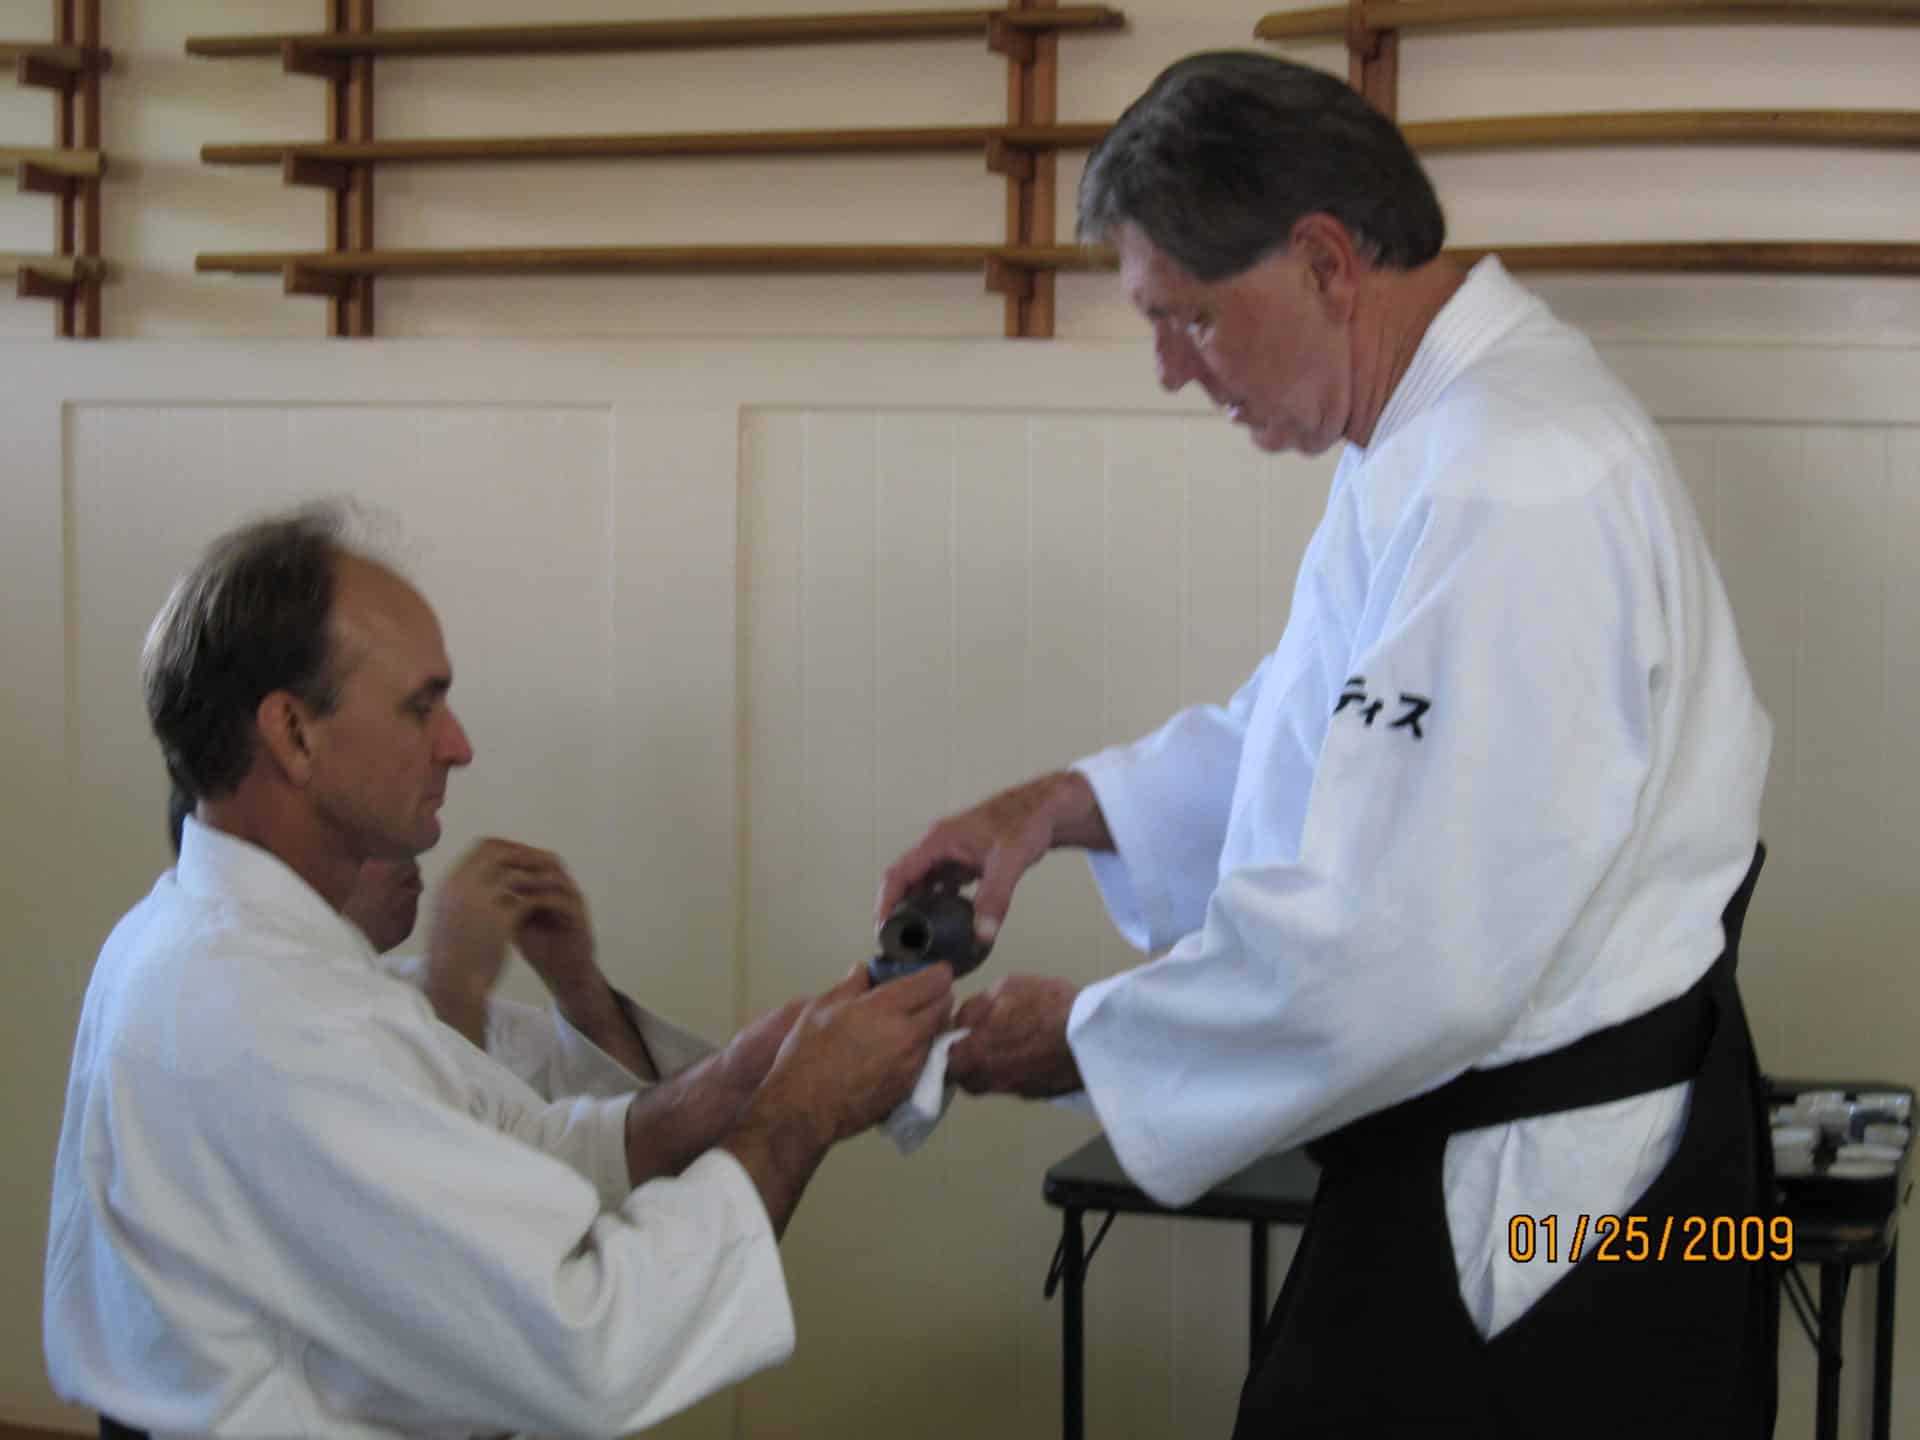 Curtis Sensei pouring Omiki for Senior Instructor Jeff Baldwin